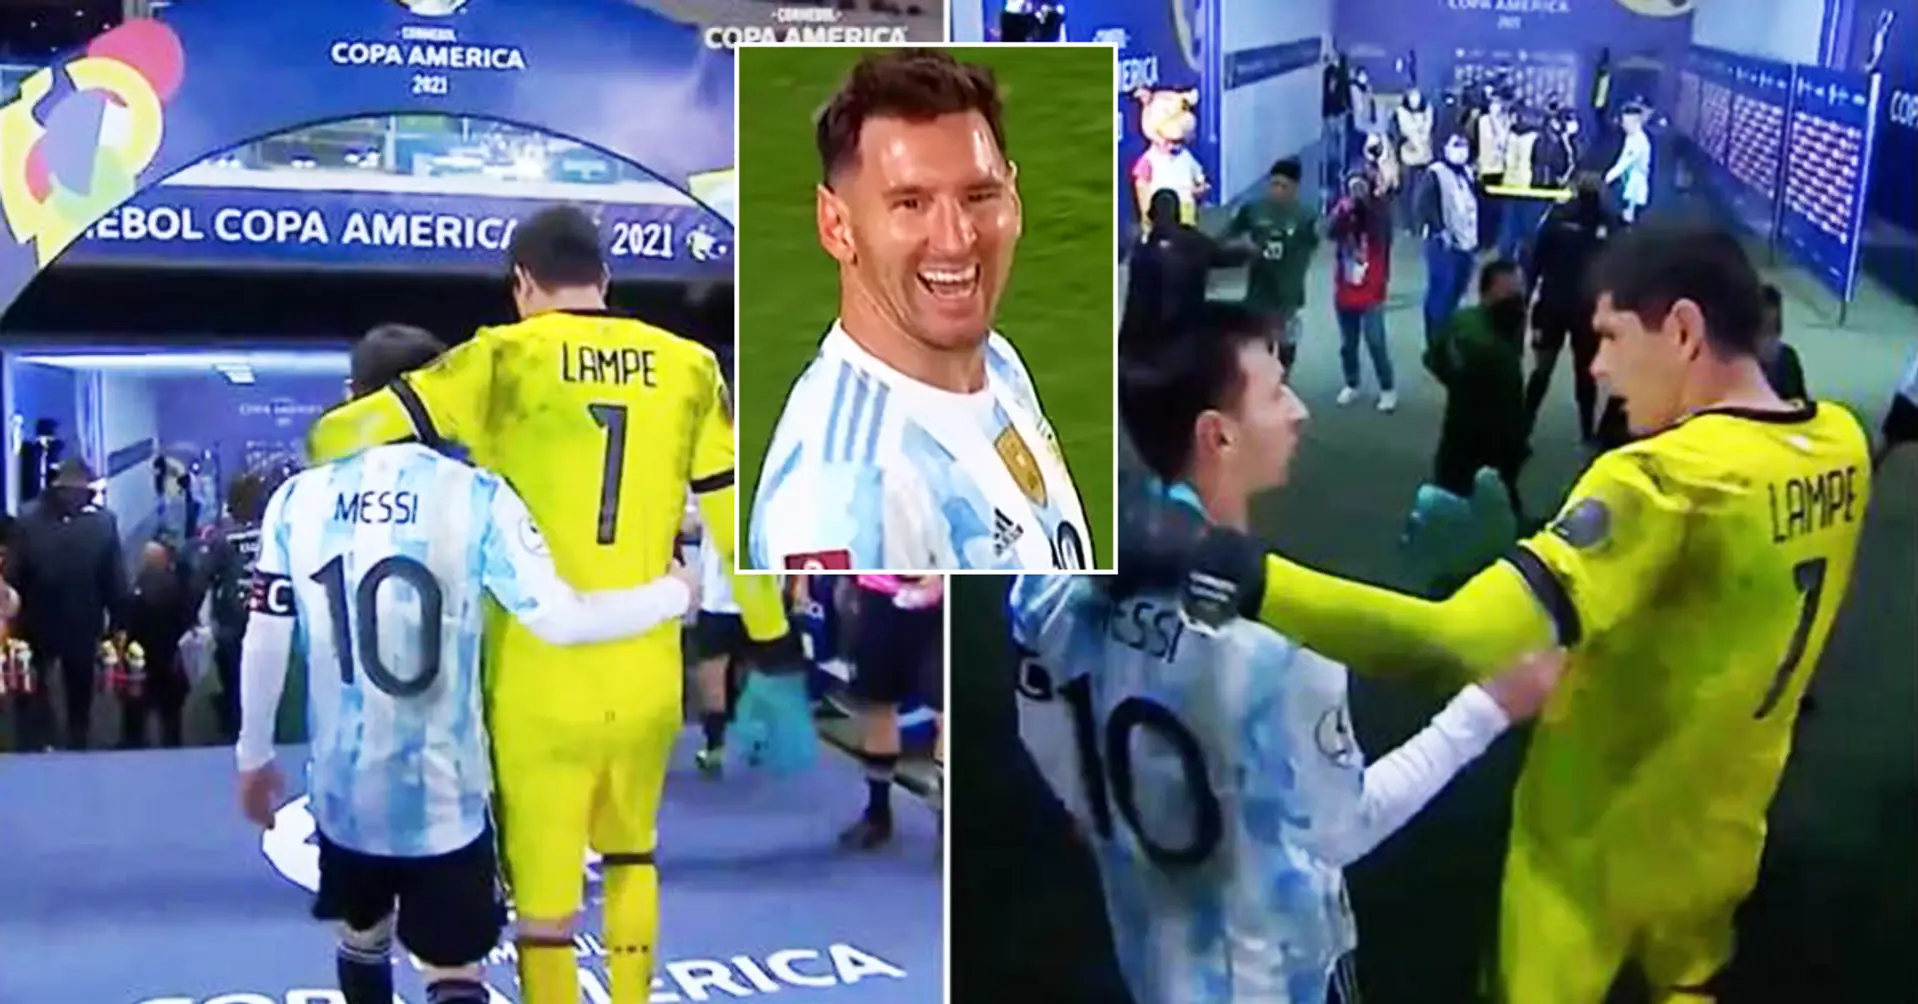 Le gardien bolivien révèle ce qu'il pense de Leo Messi après avoir encaissé 3 buts de lui